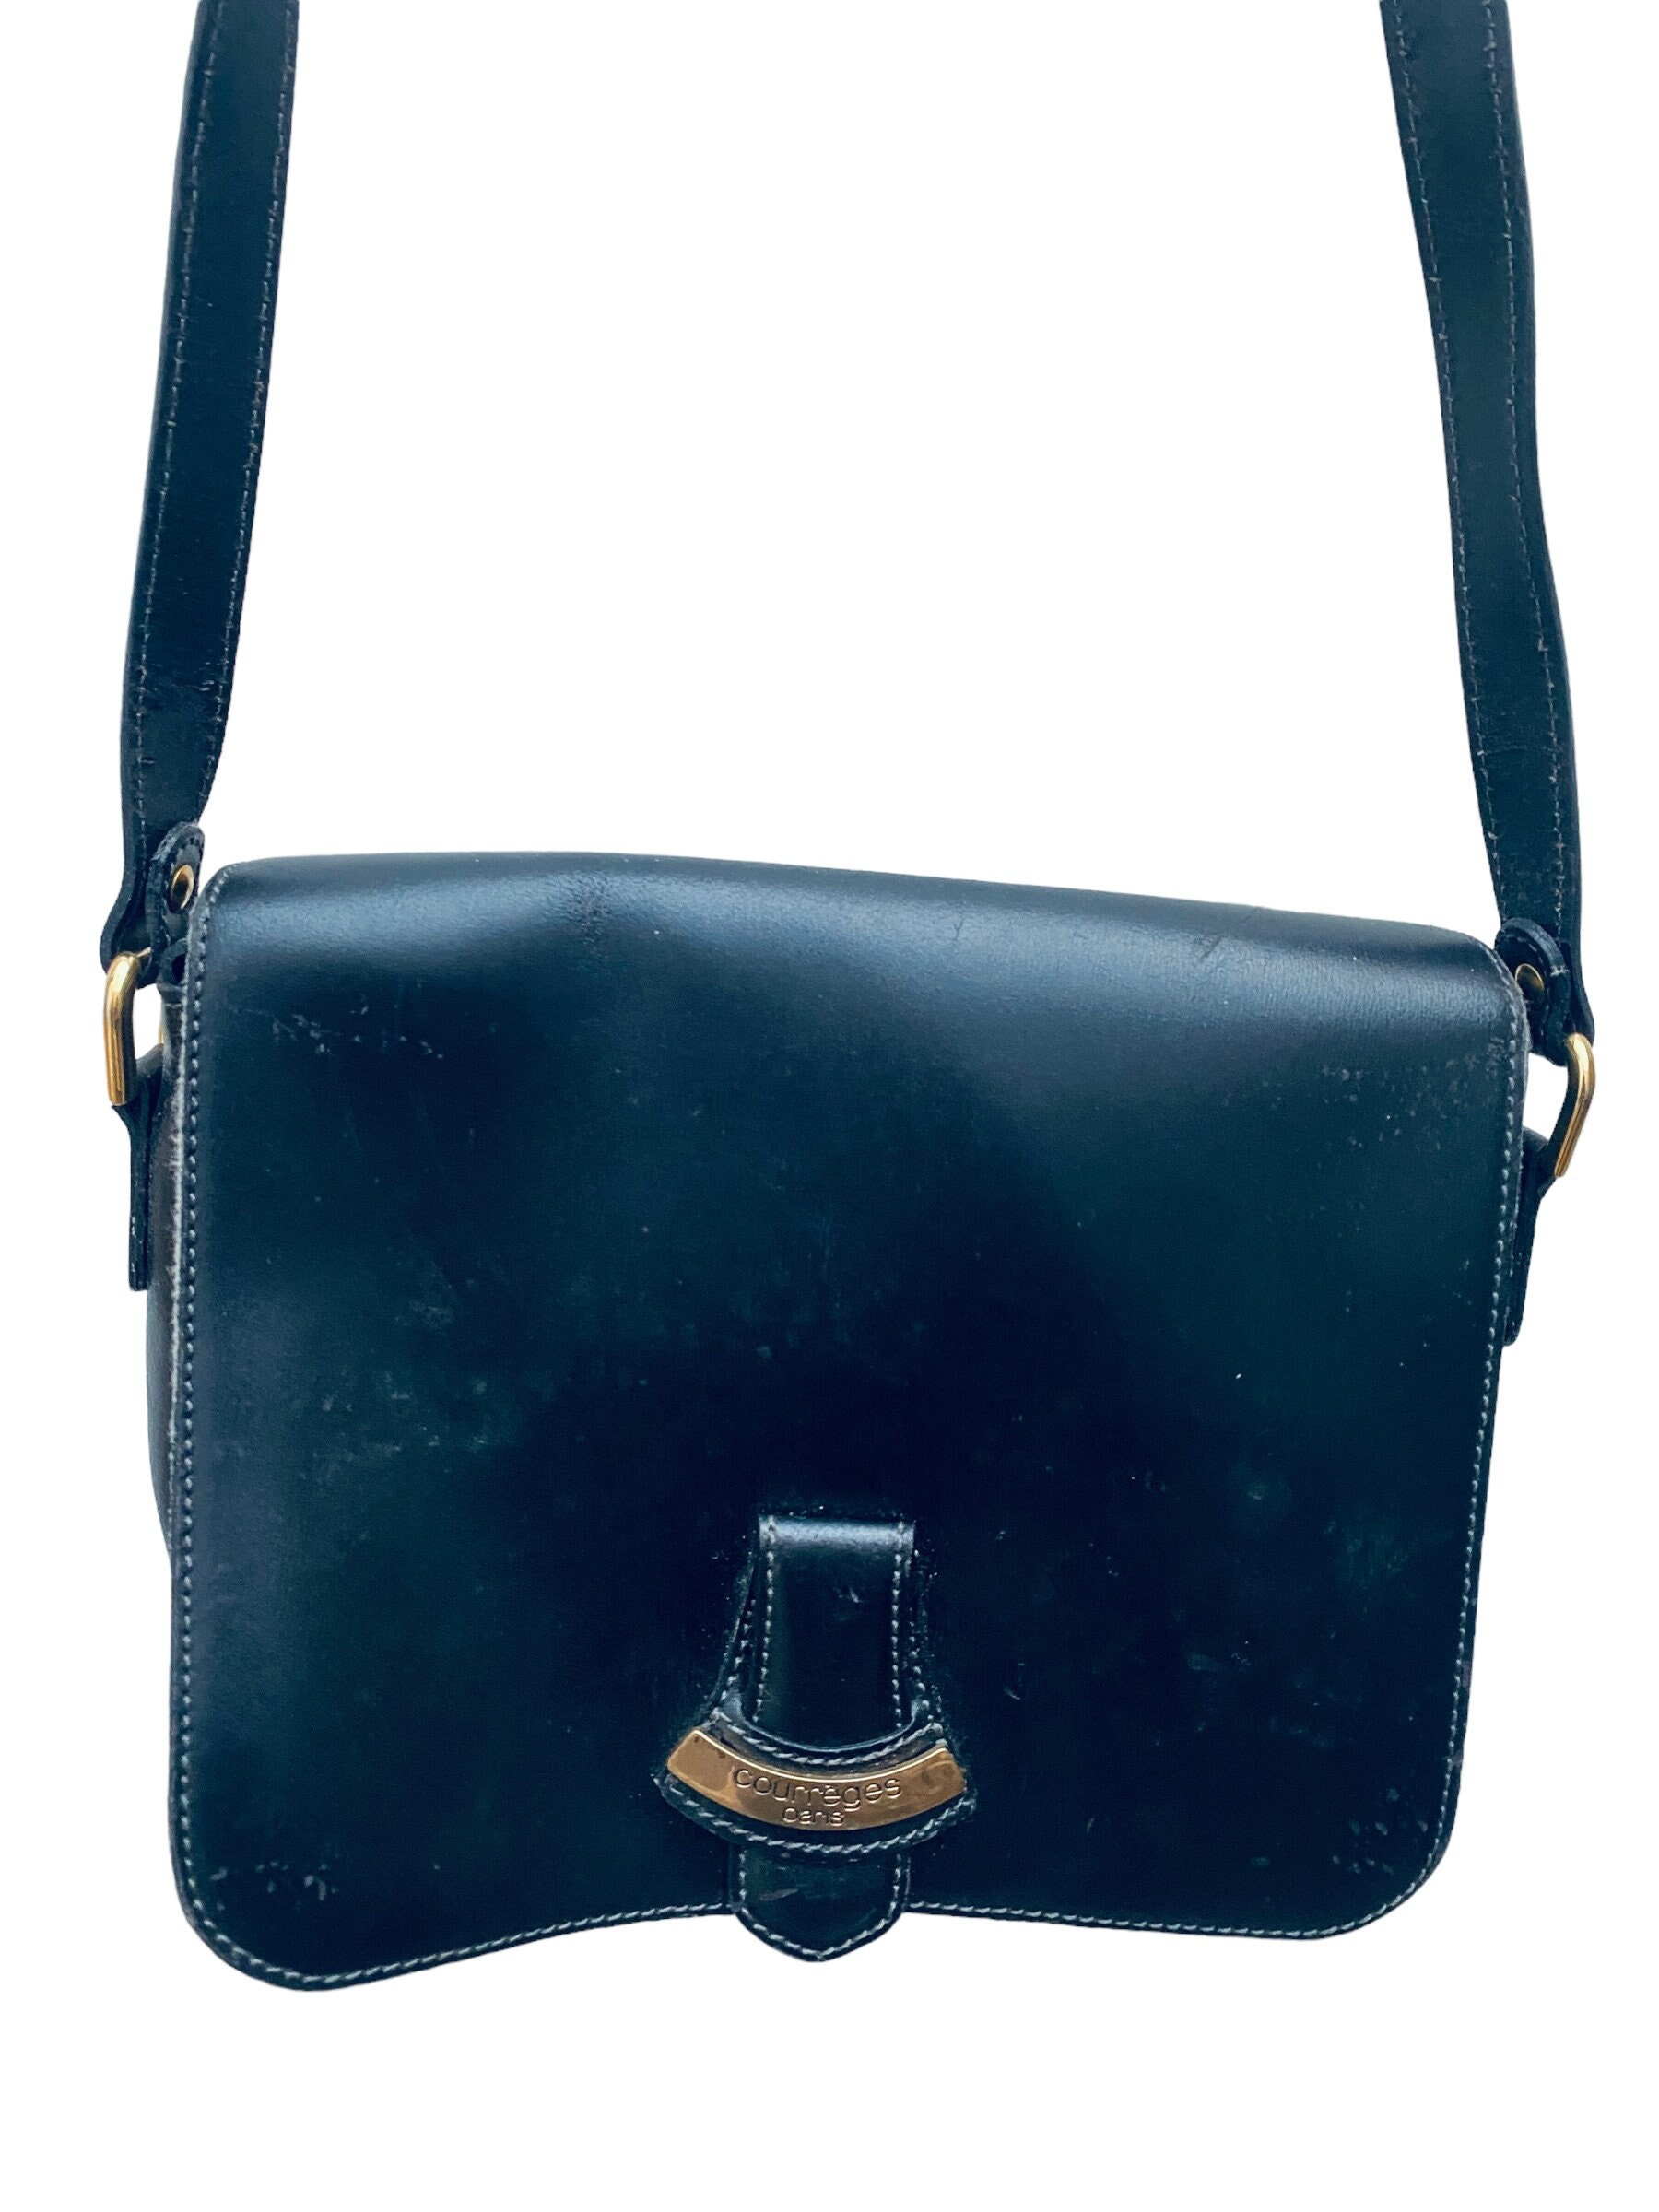 70s Courrèges Vintage Black Leather Shoulder Bag